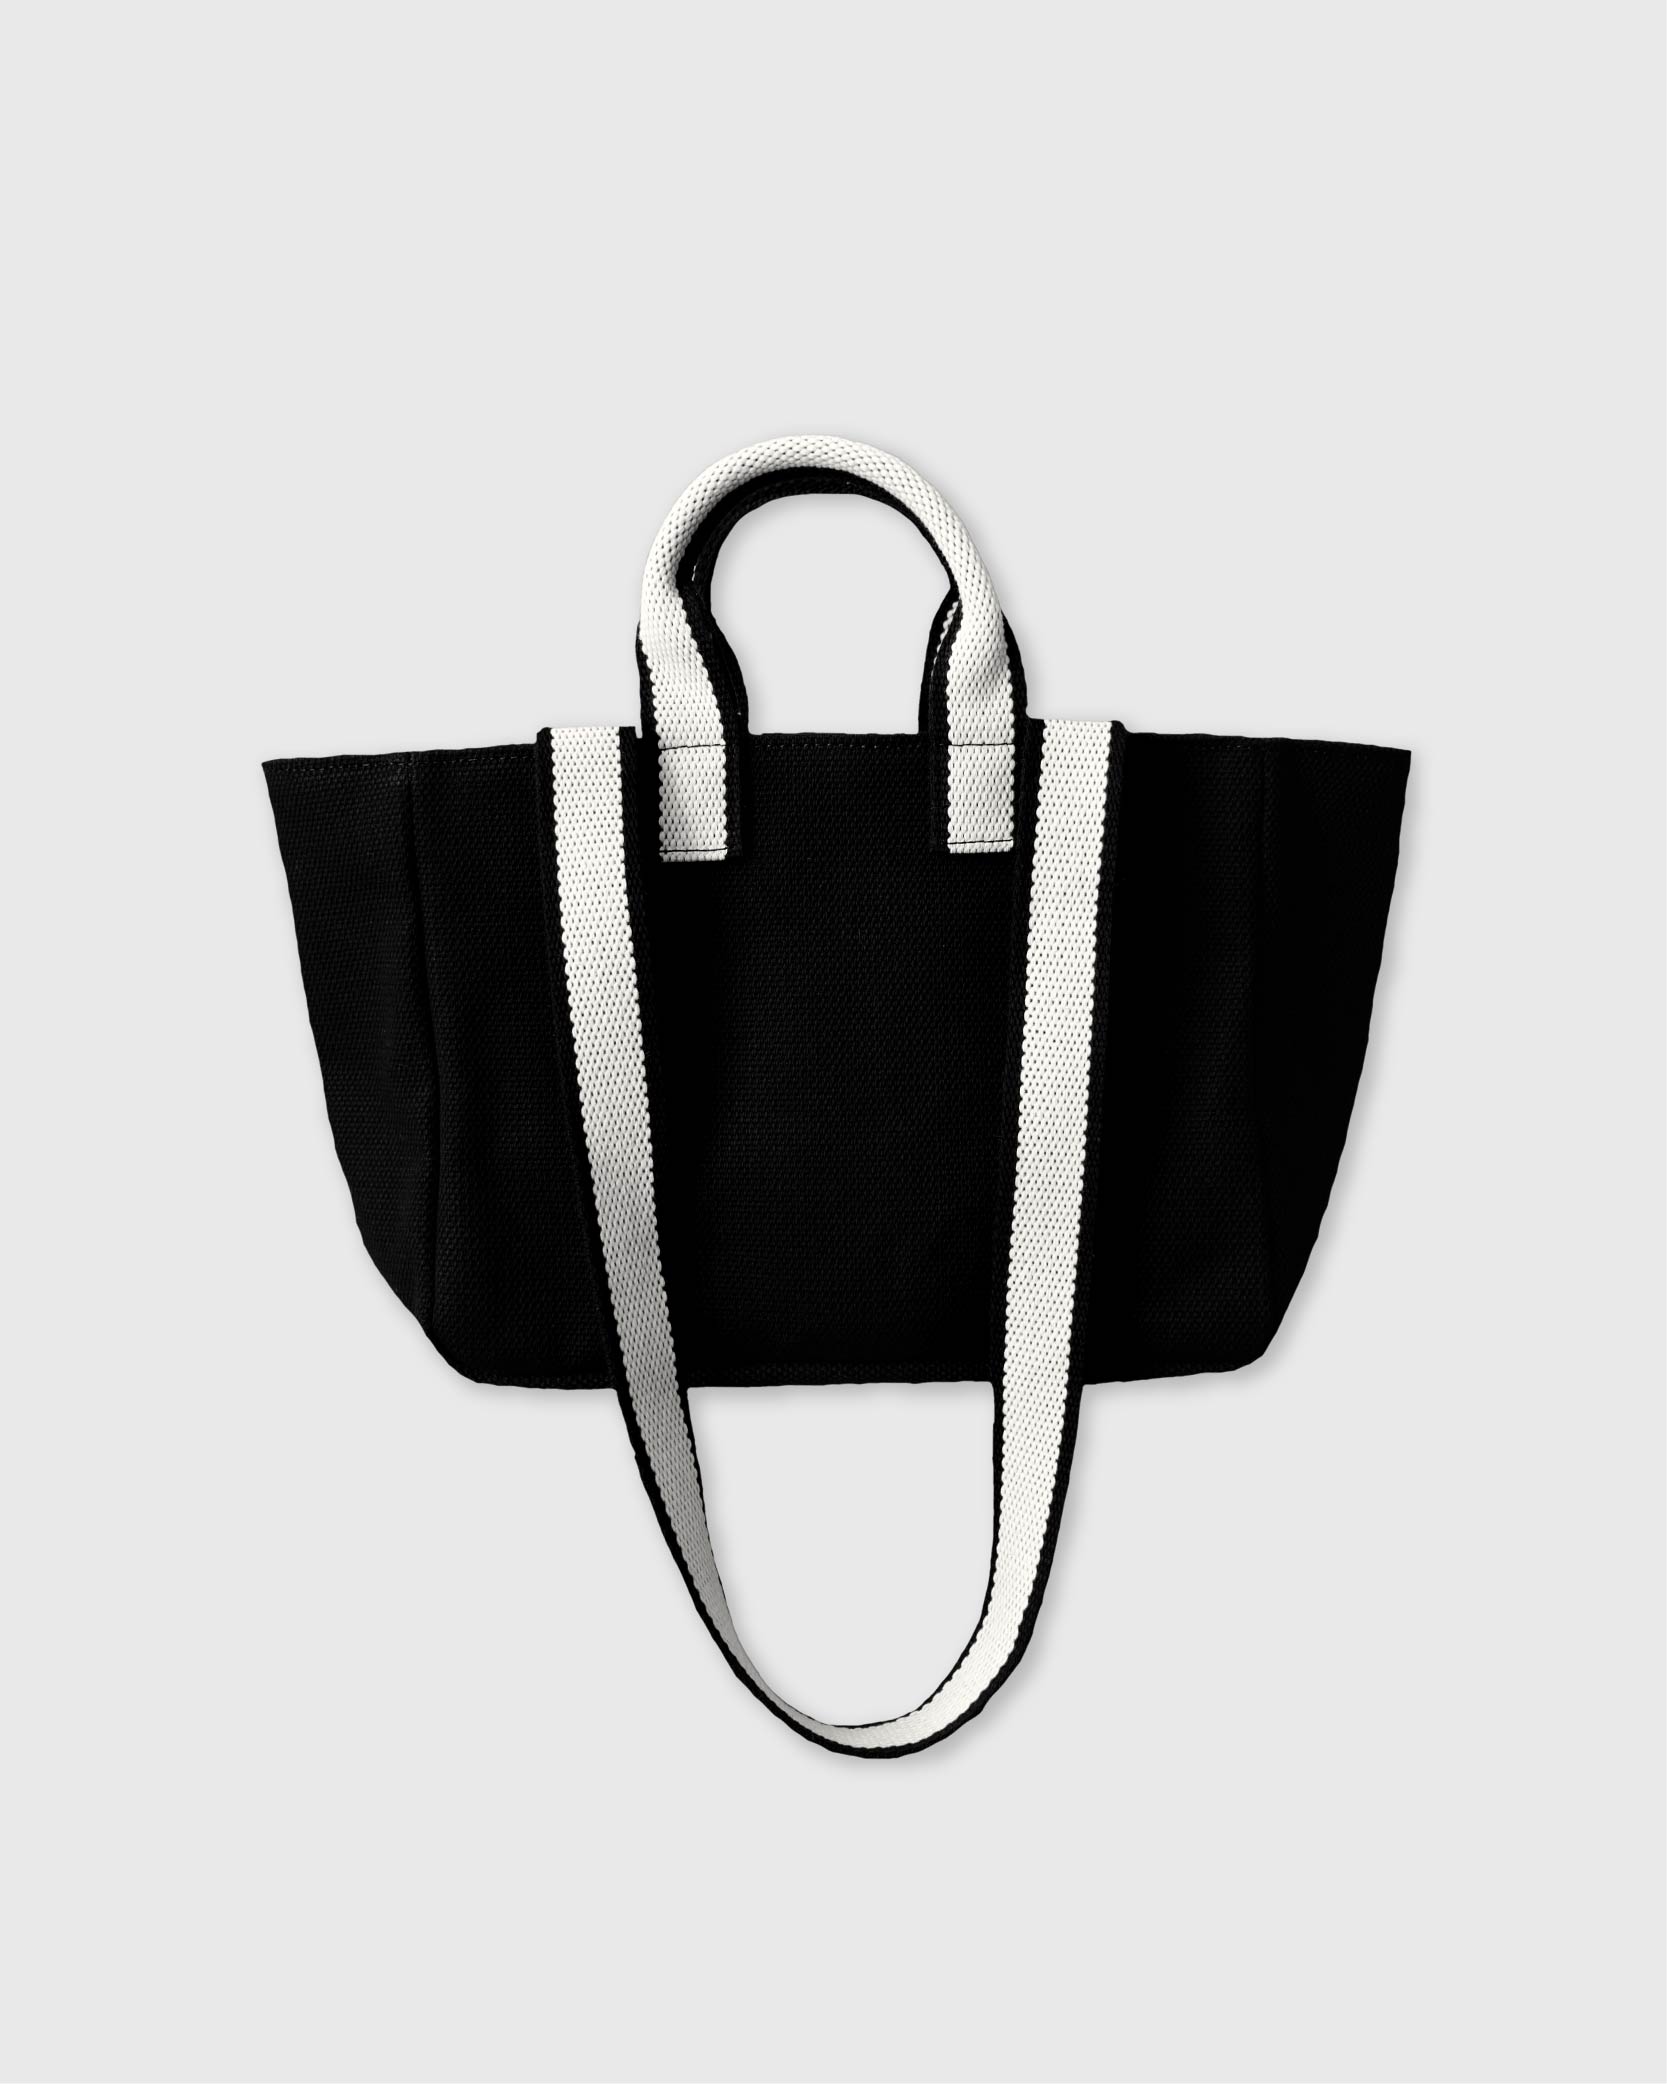 언폴드,unfold,에코백,파우치,천가방,코스터,백팩,스크런치[예약 배송 2/27] Mini Two-tone Strap Bag (black)